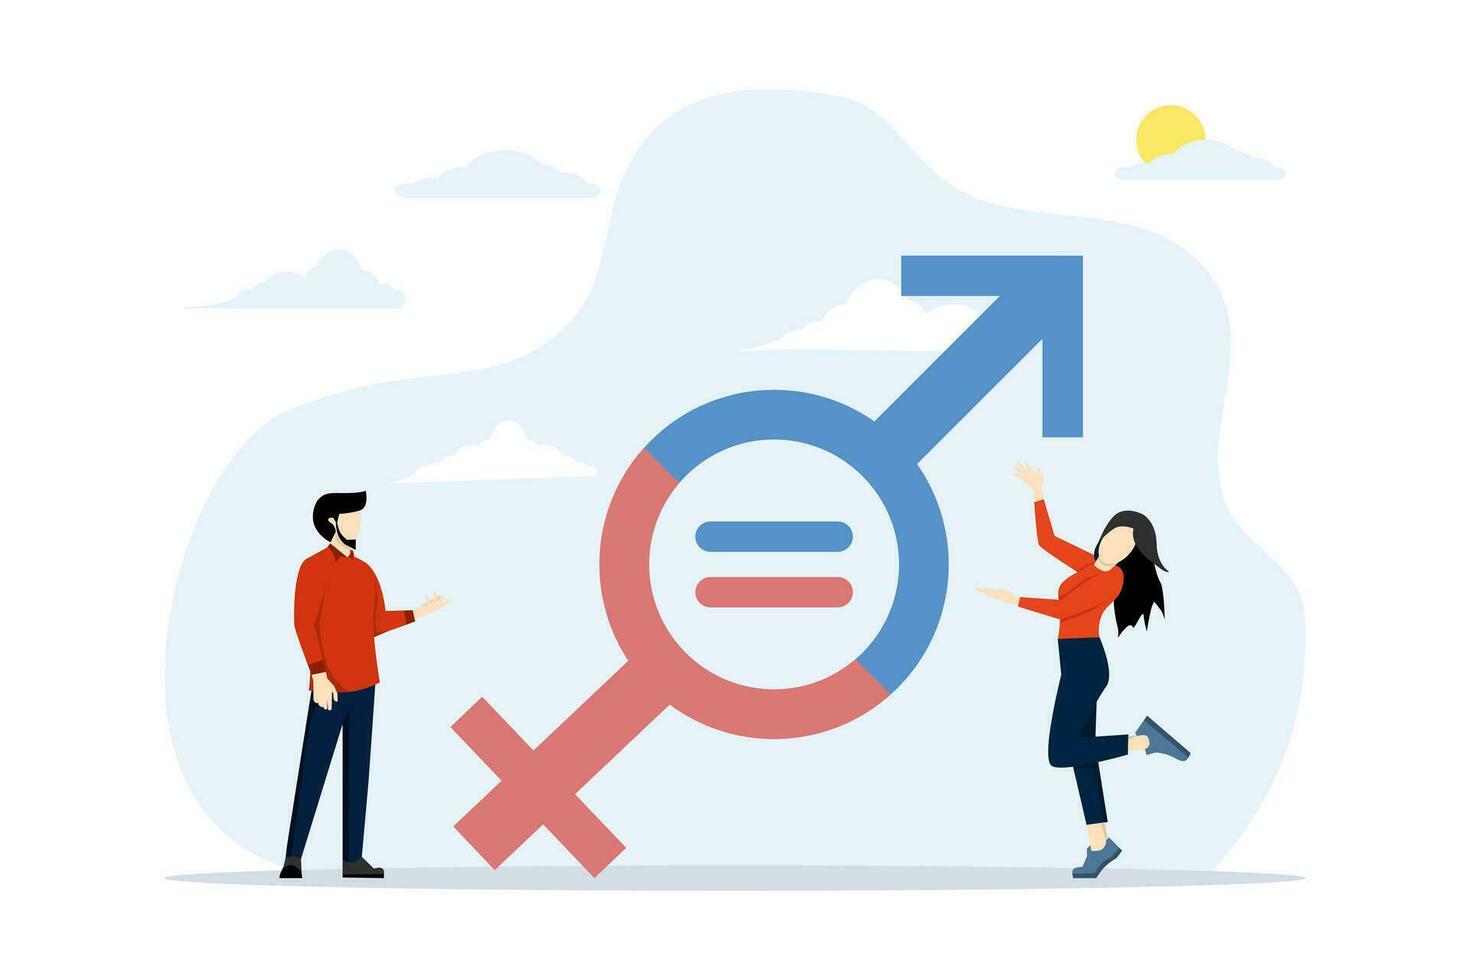 el concepto de género igualdad, igualdad de hombres y mujer, equilibrar en el lugar de trabajo, hembra y masculino trabajadores tener el mismo oportunidades, empresarios y mujer sostener género igualdad simbólicamente. vector